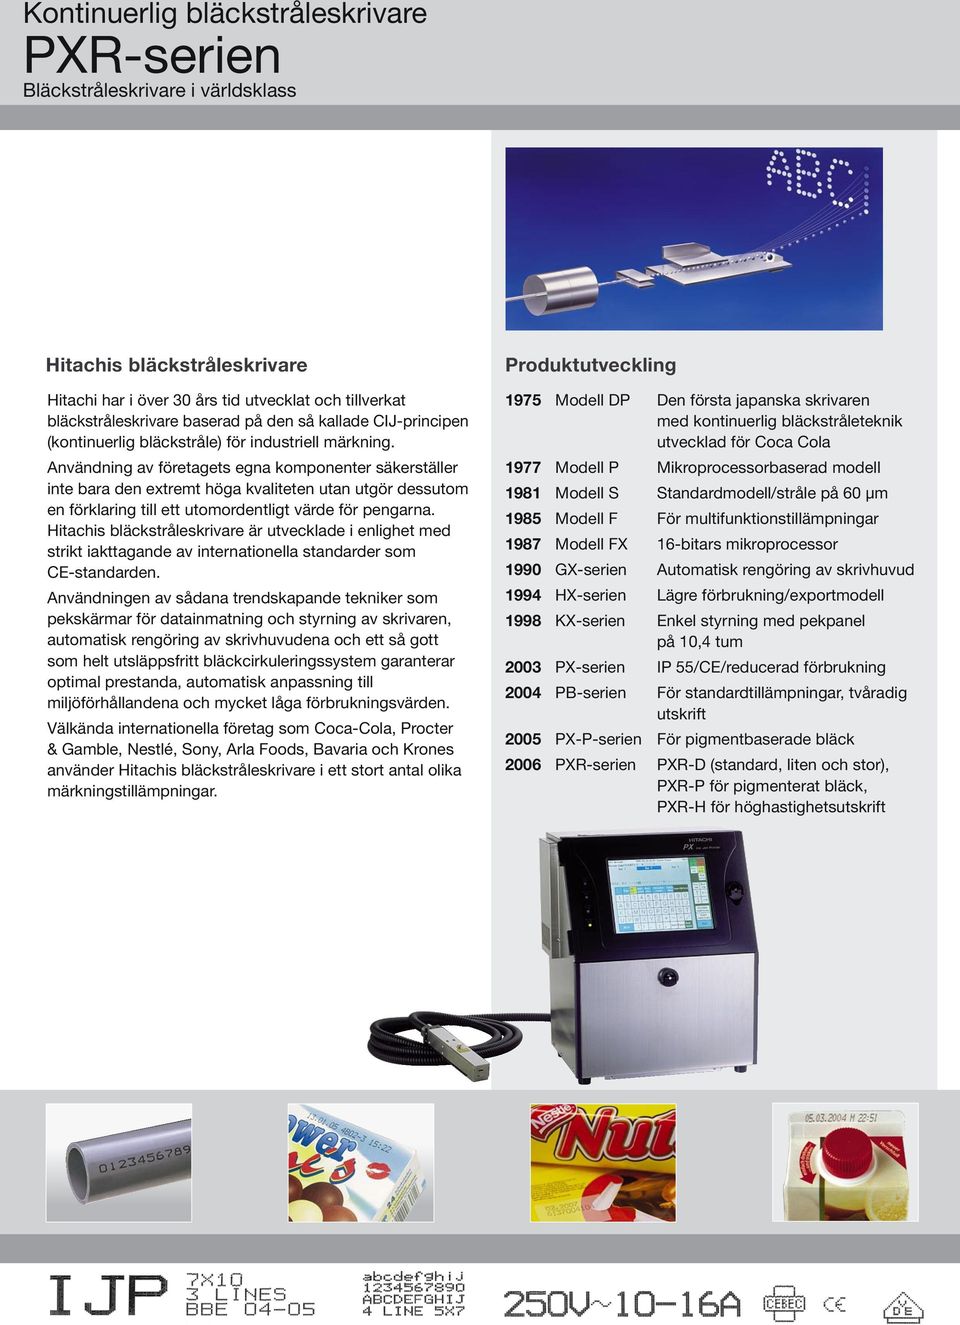 Hitachis bläckstråleskrivare är utvecklade i enlighet med strikt iakttagande av internationella standarder som CE-standarden.